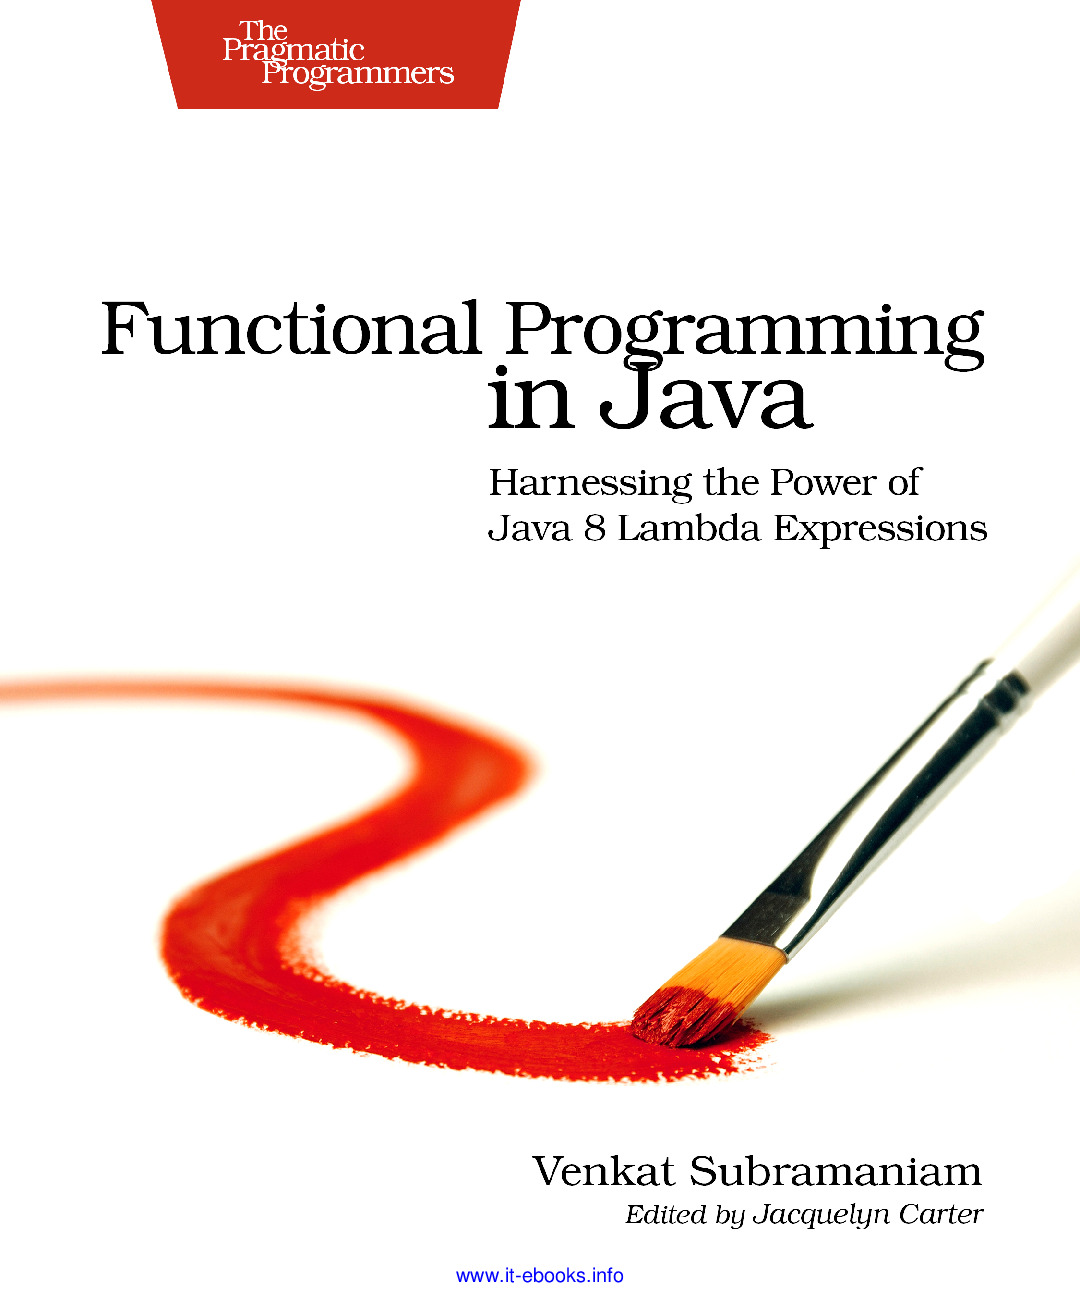 [JAVA][Functional Programming in Java]